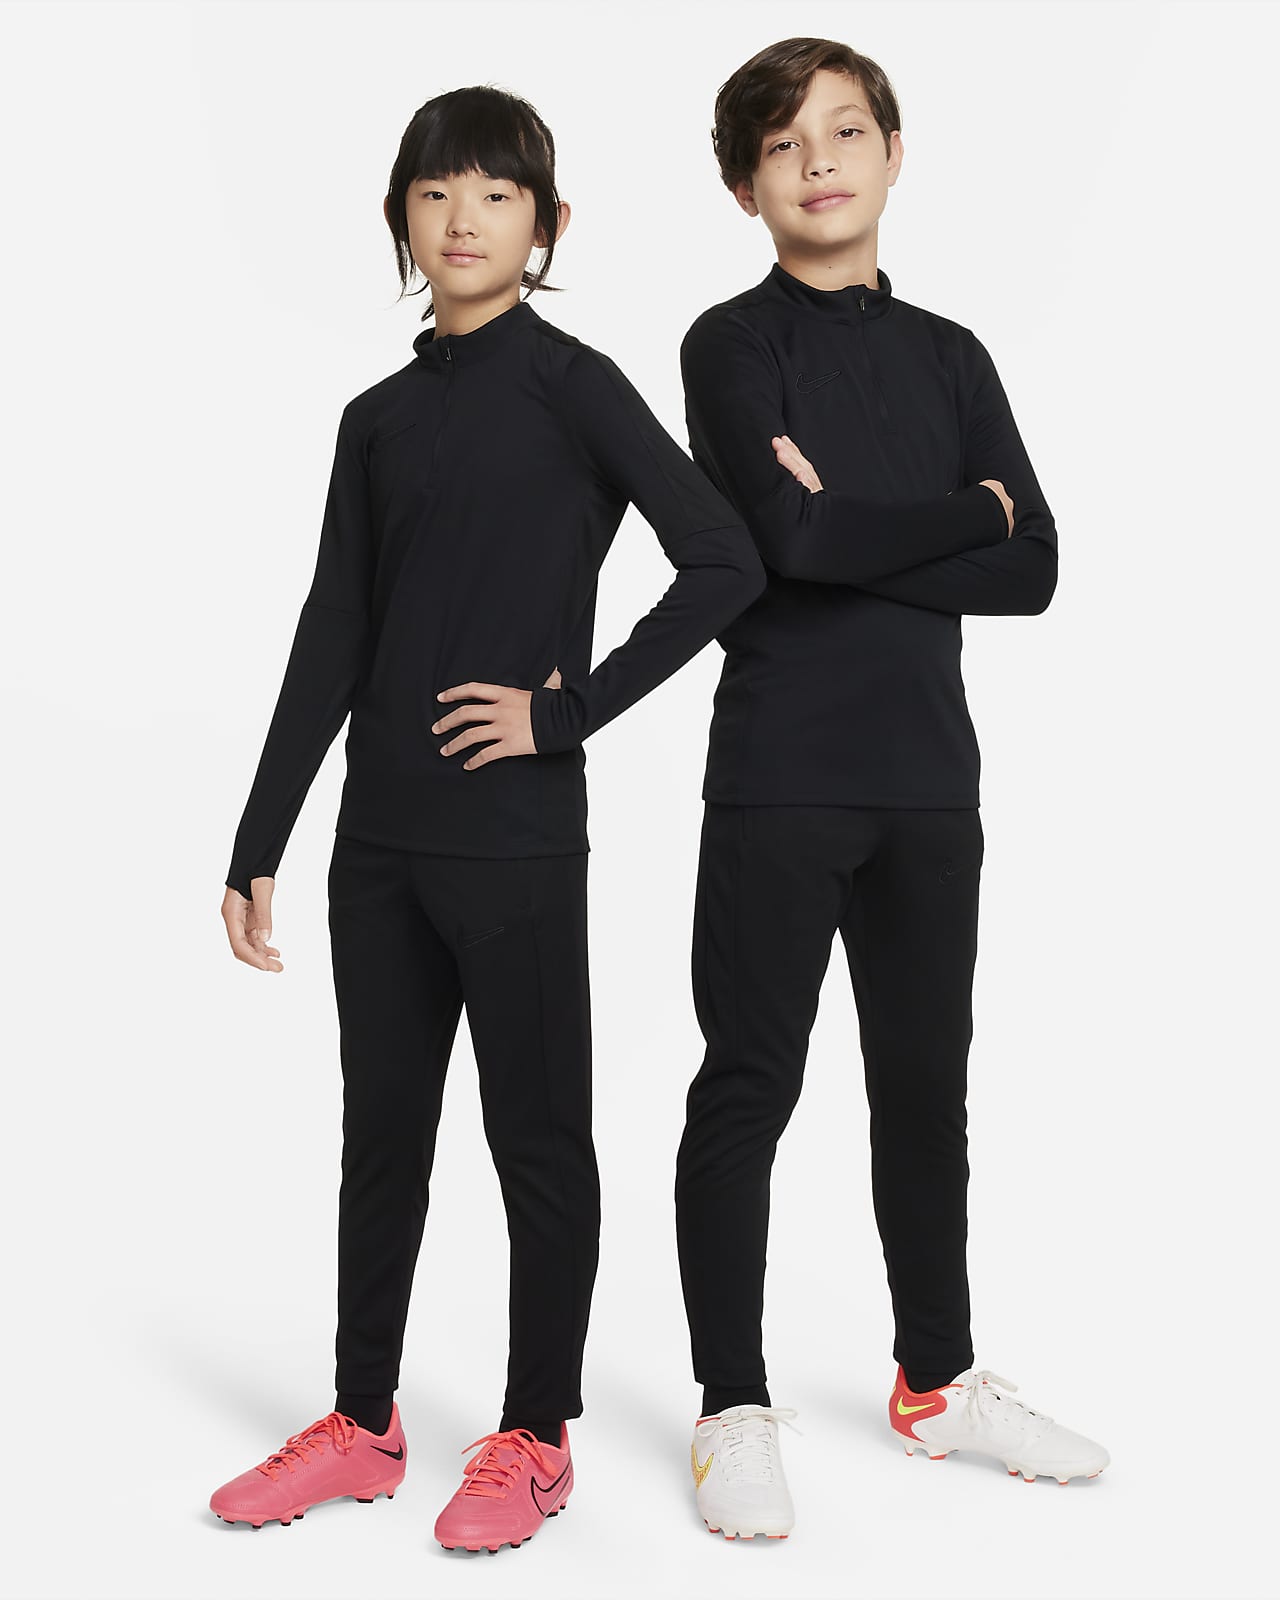 Vêtements Nike pour Enfant  Collections de Match et Entrainements